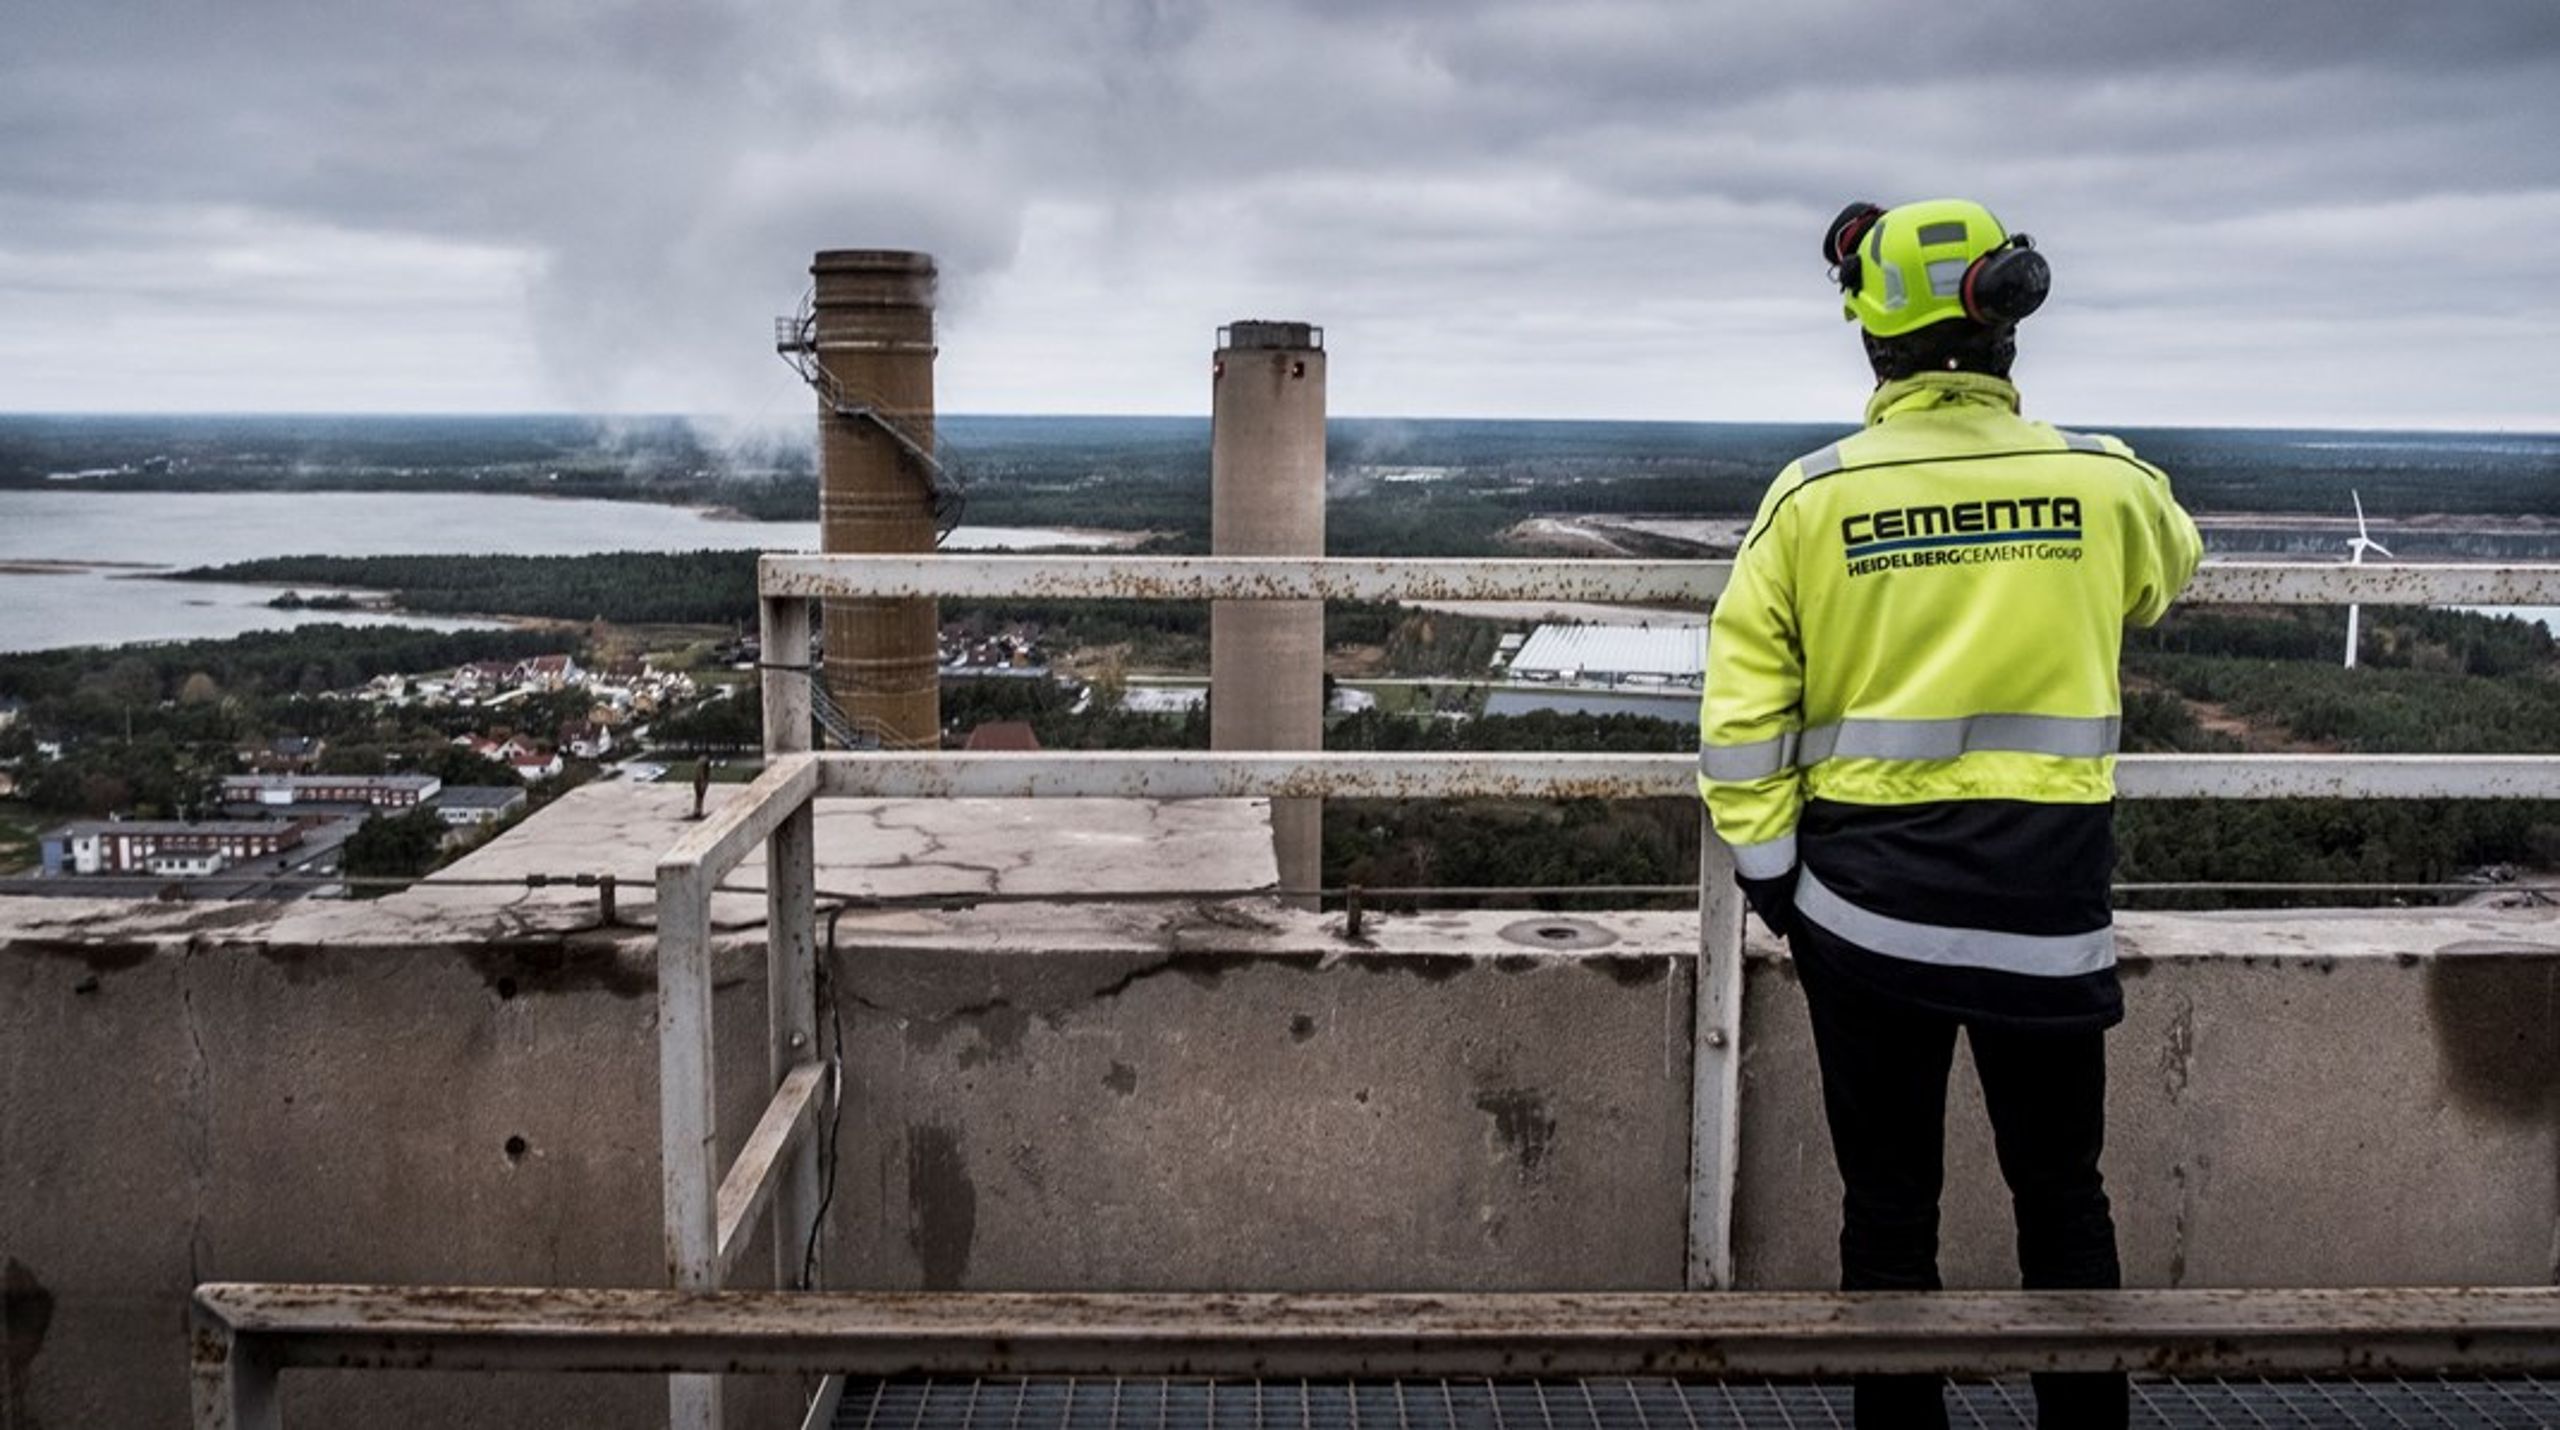 Cementas fabrik i Slite på Gotland står för tre procent av Sveriges koldioxidutsläpp.